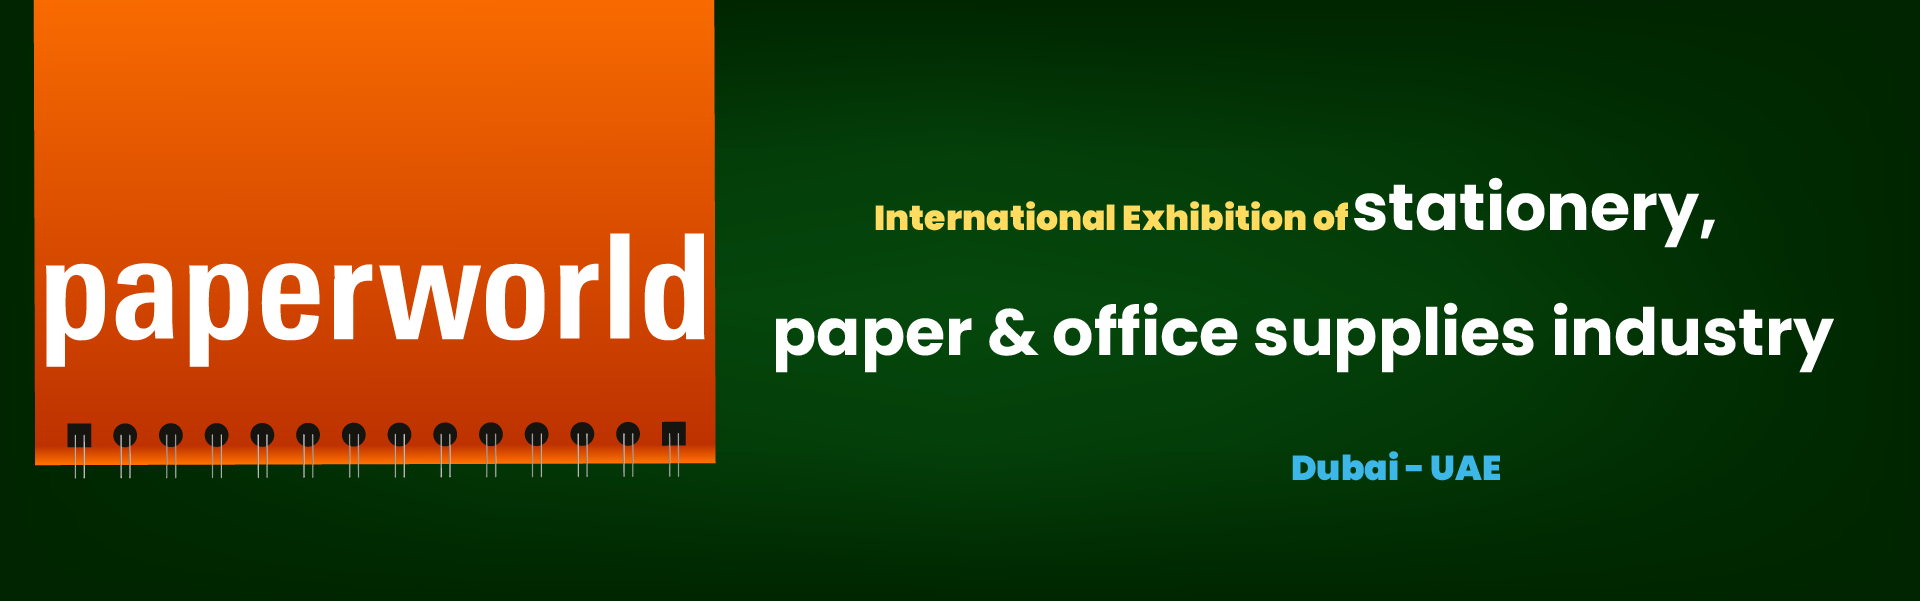 Paperworld Middle East Exhibition Dubai United Arab Emirates